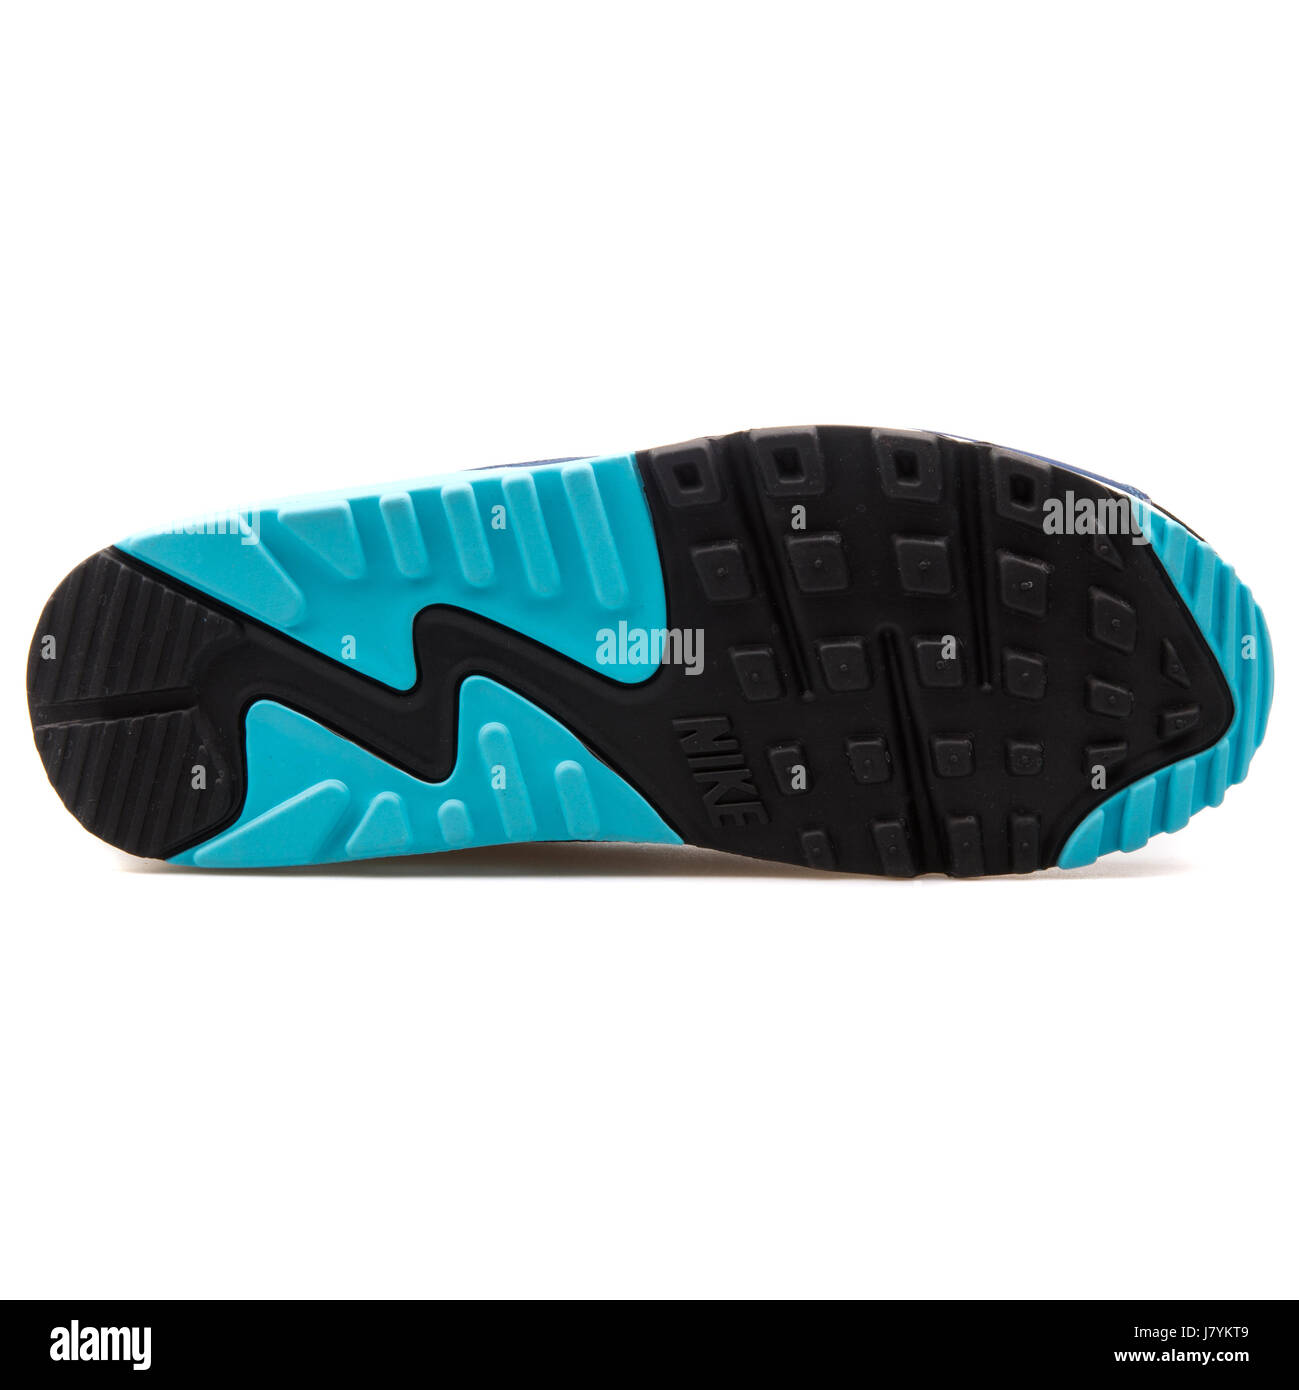 Nike WMNS Air Max 90 Langzeitherzfrequenz schwarz blau Frauen läuft  Sneakers - 768887-400 Stockfotografie - Alamy